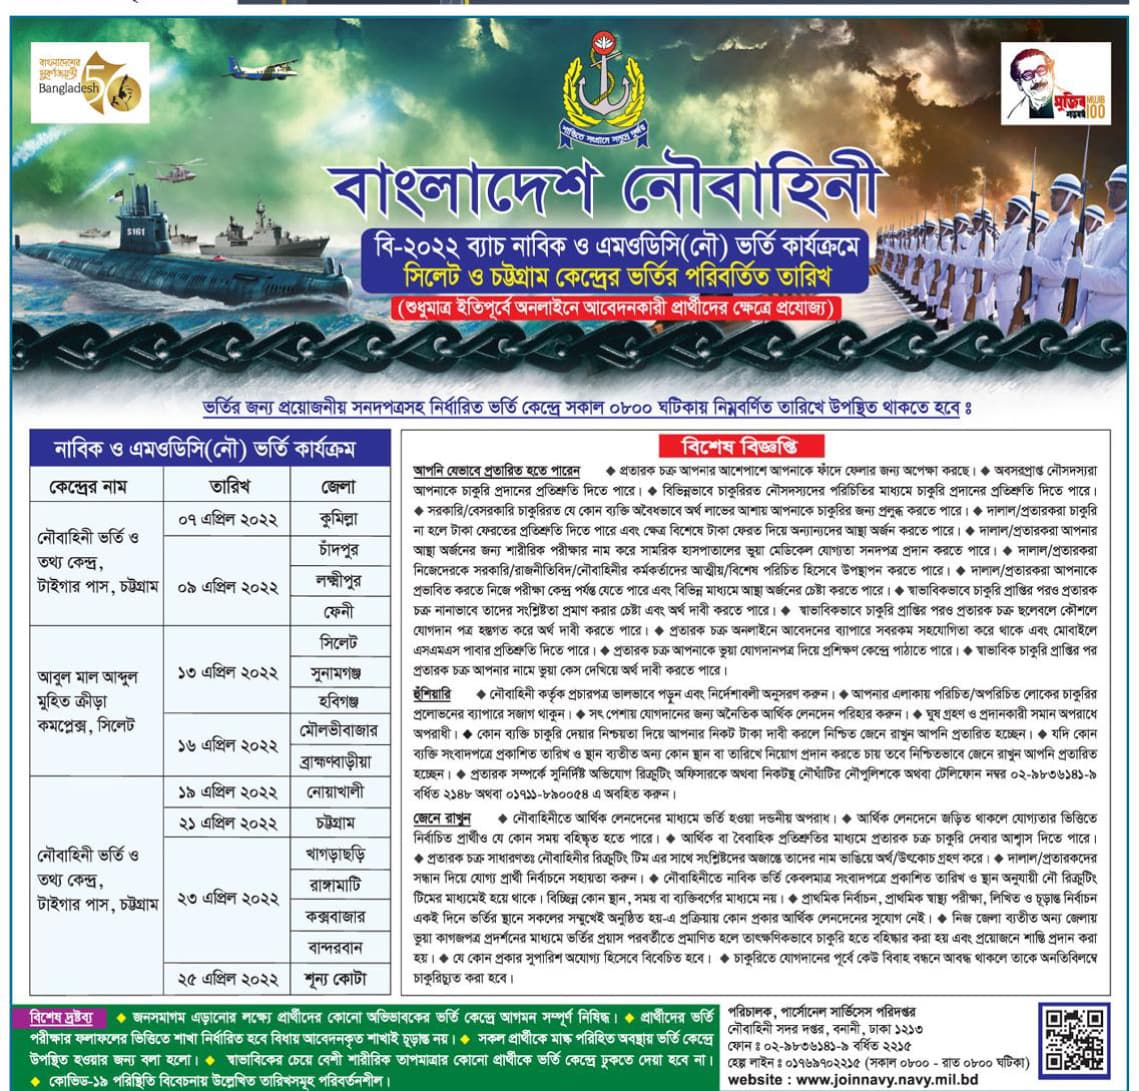 join bangladesh navy